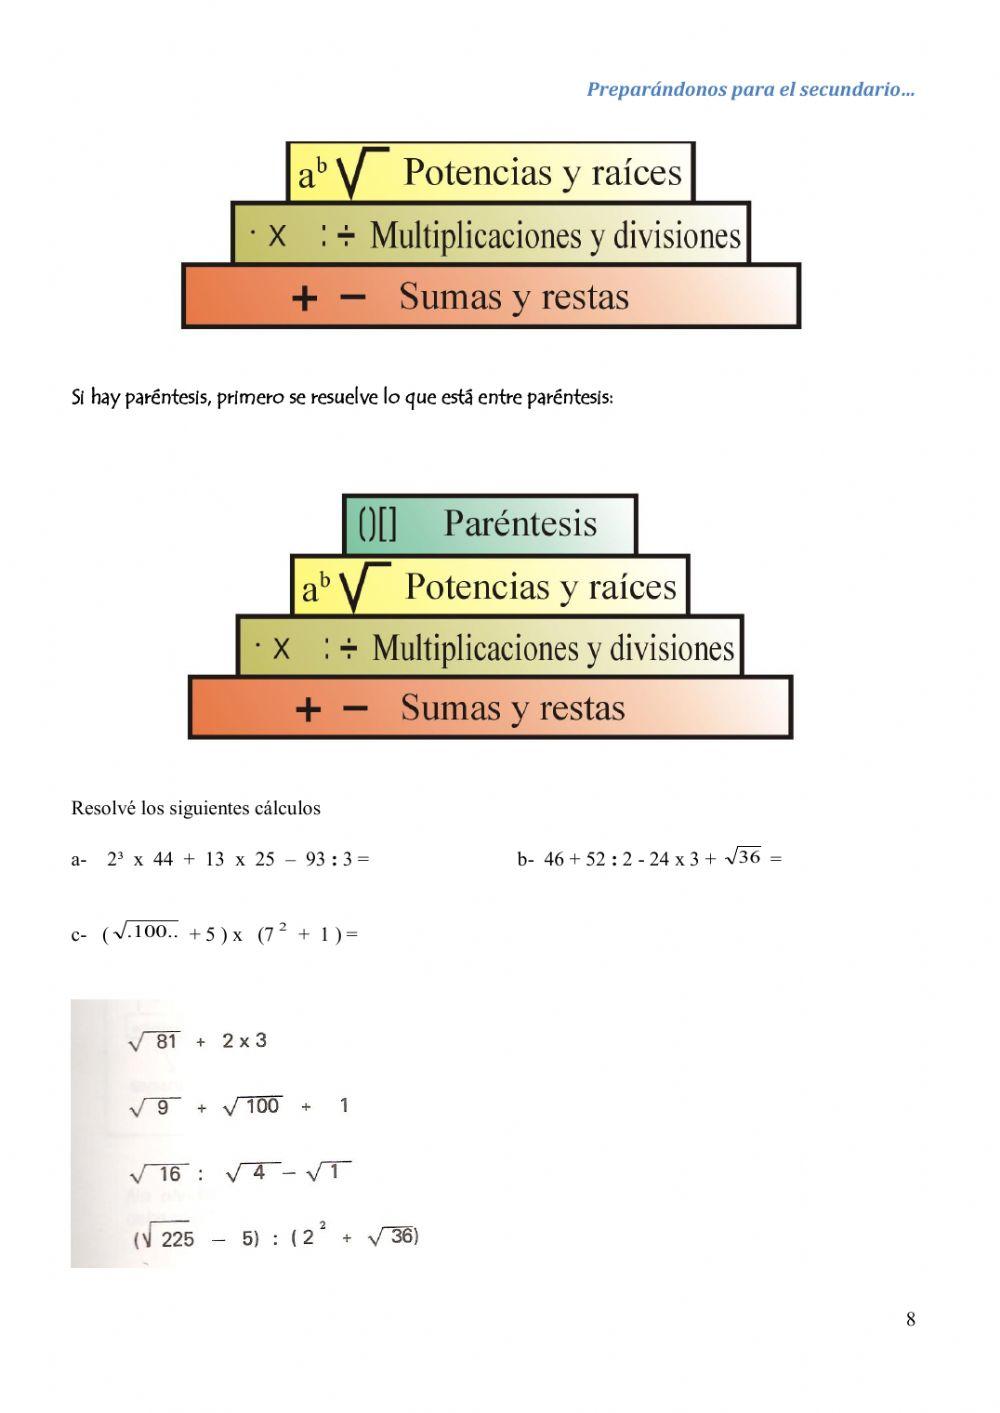 Jerarquía de cálculos